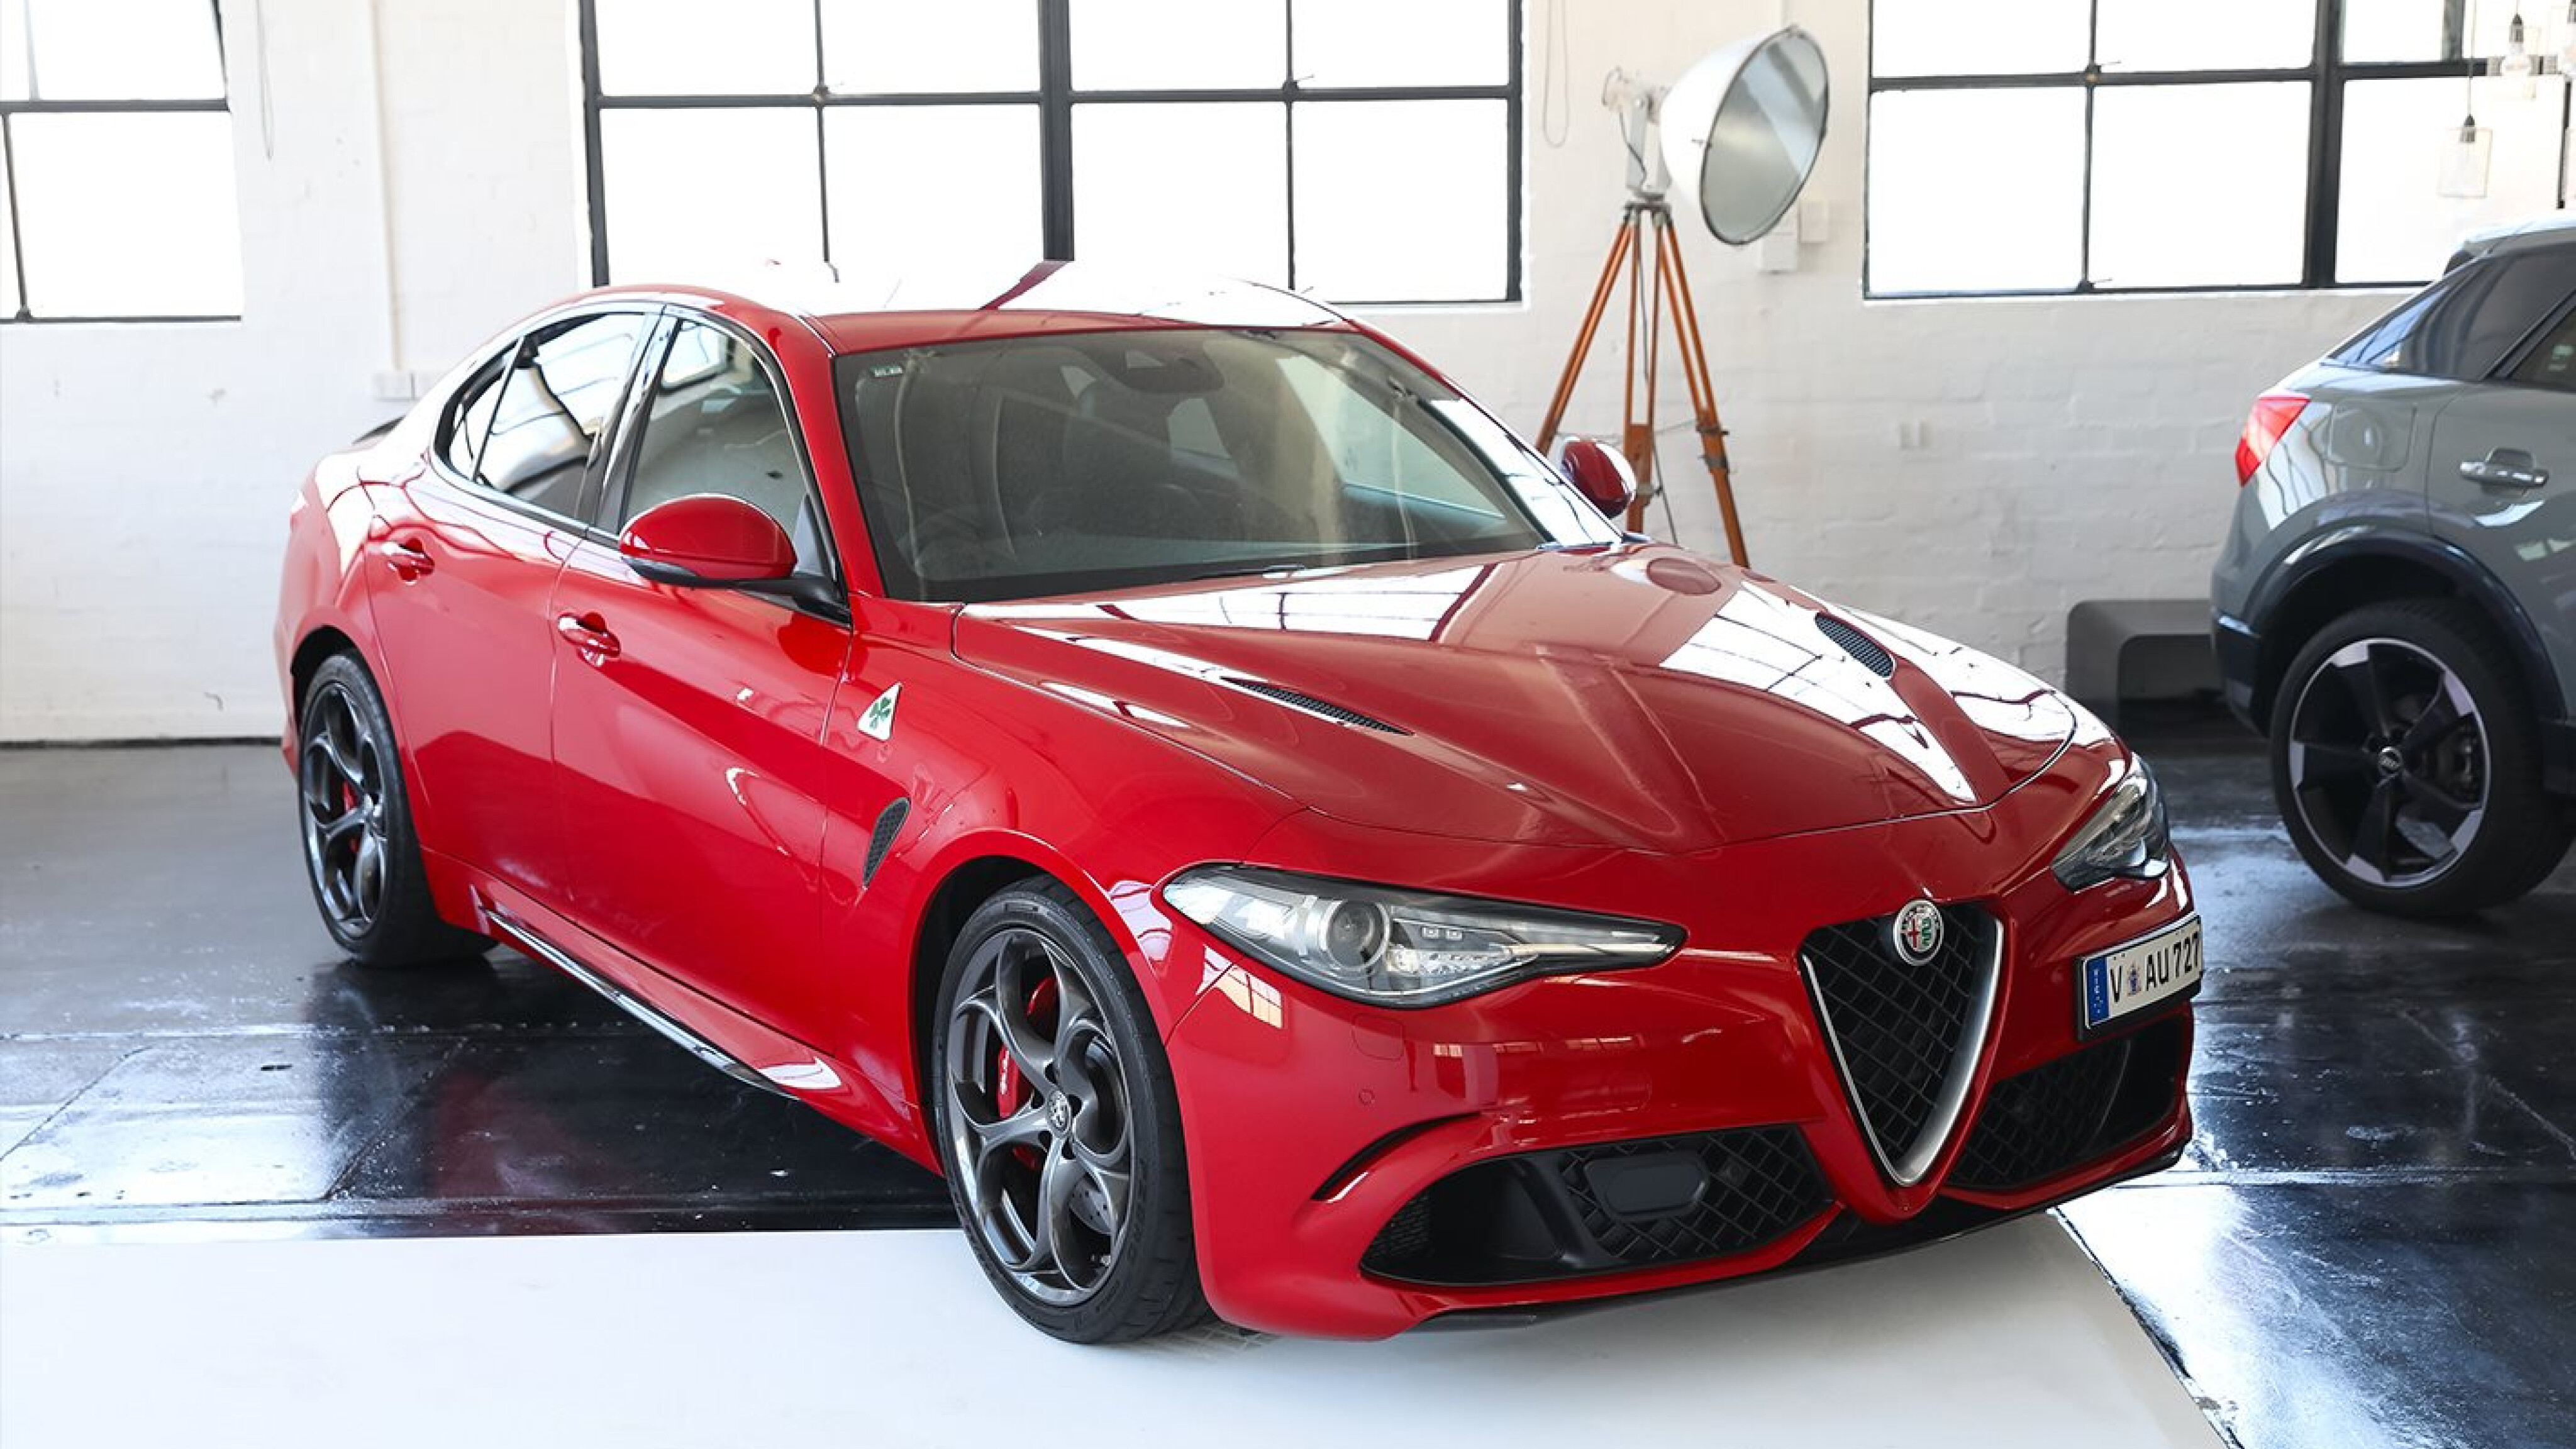 The Alfa Romeo Giulia Wins 3 Awards